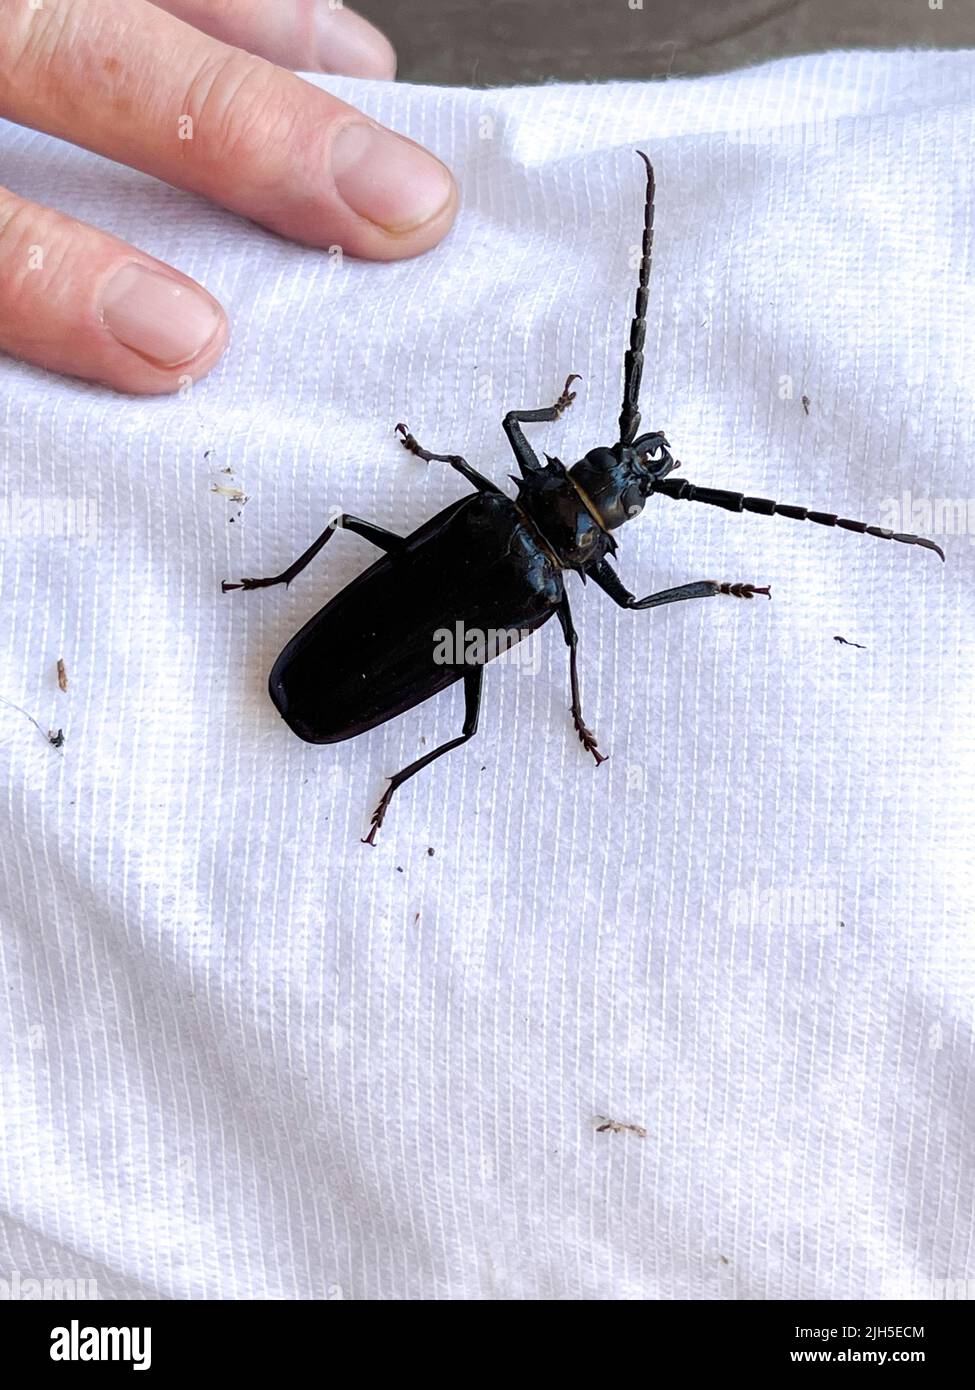 El dedo humano empuja hacia abajo sobre el escarabajo negro grande. Foto de stock